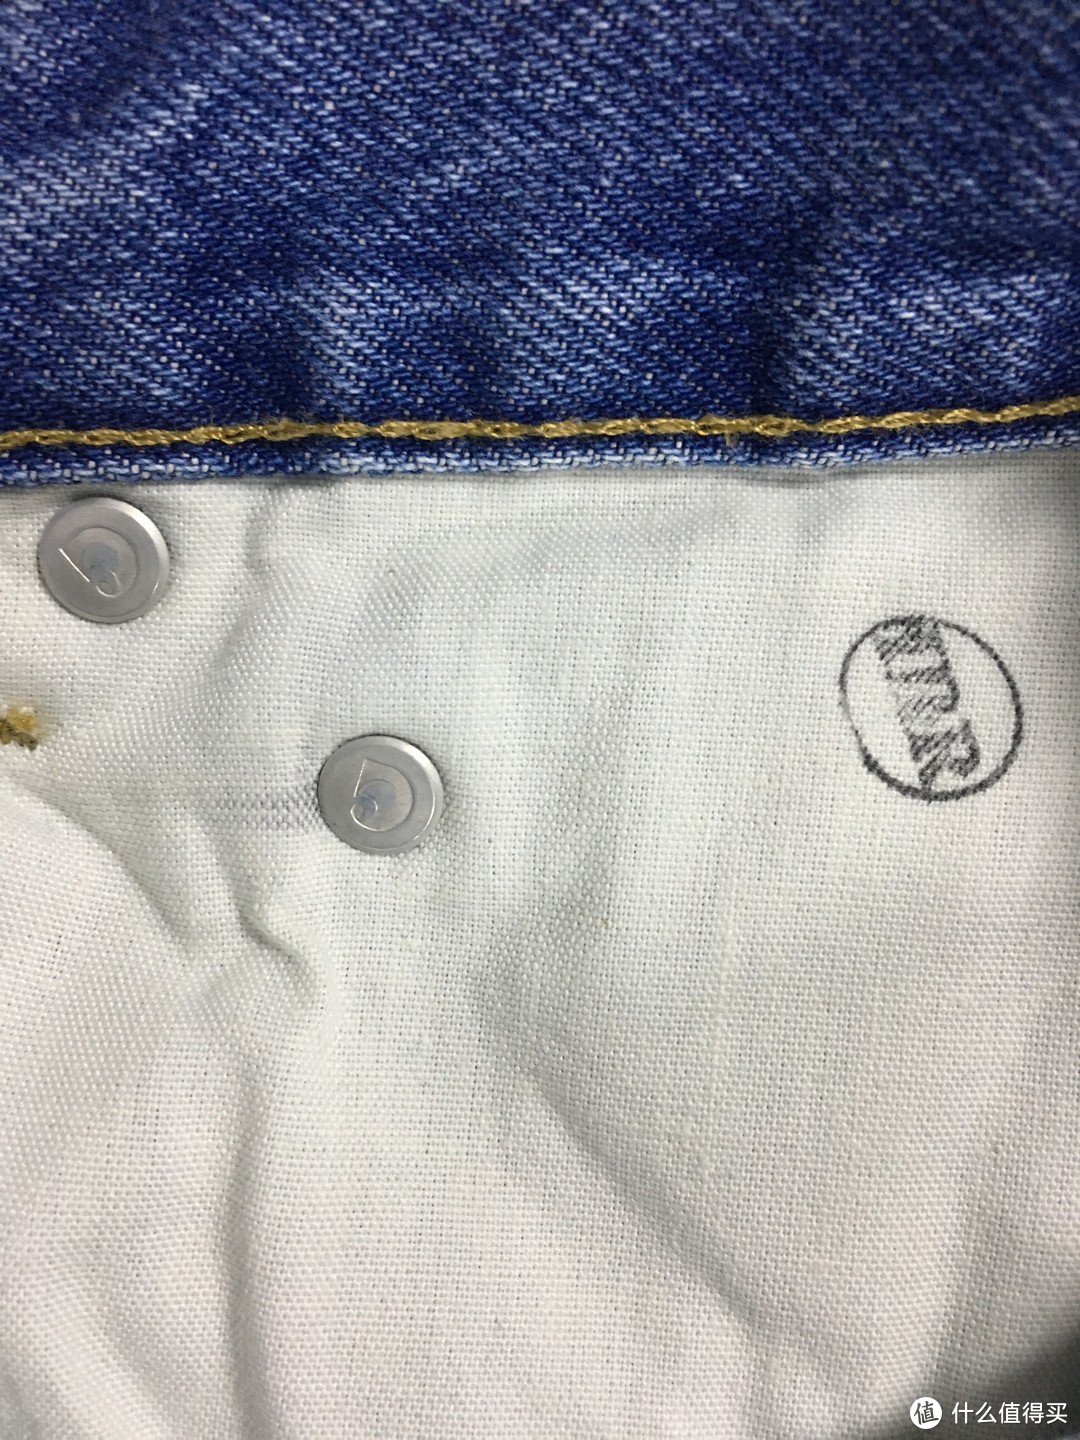 纽扣背面有品牌LOGO，IRR印章表面商品为Factory Seconds产品